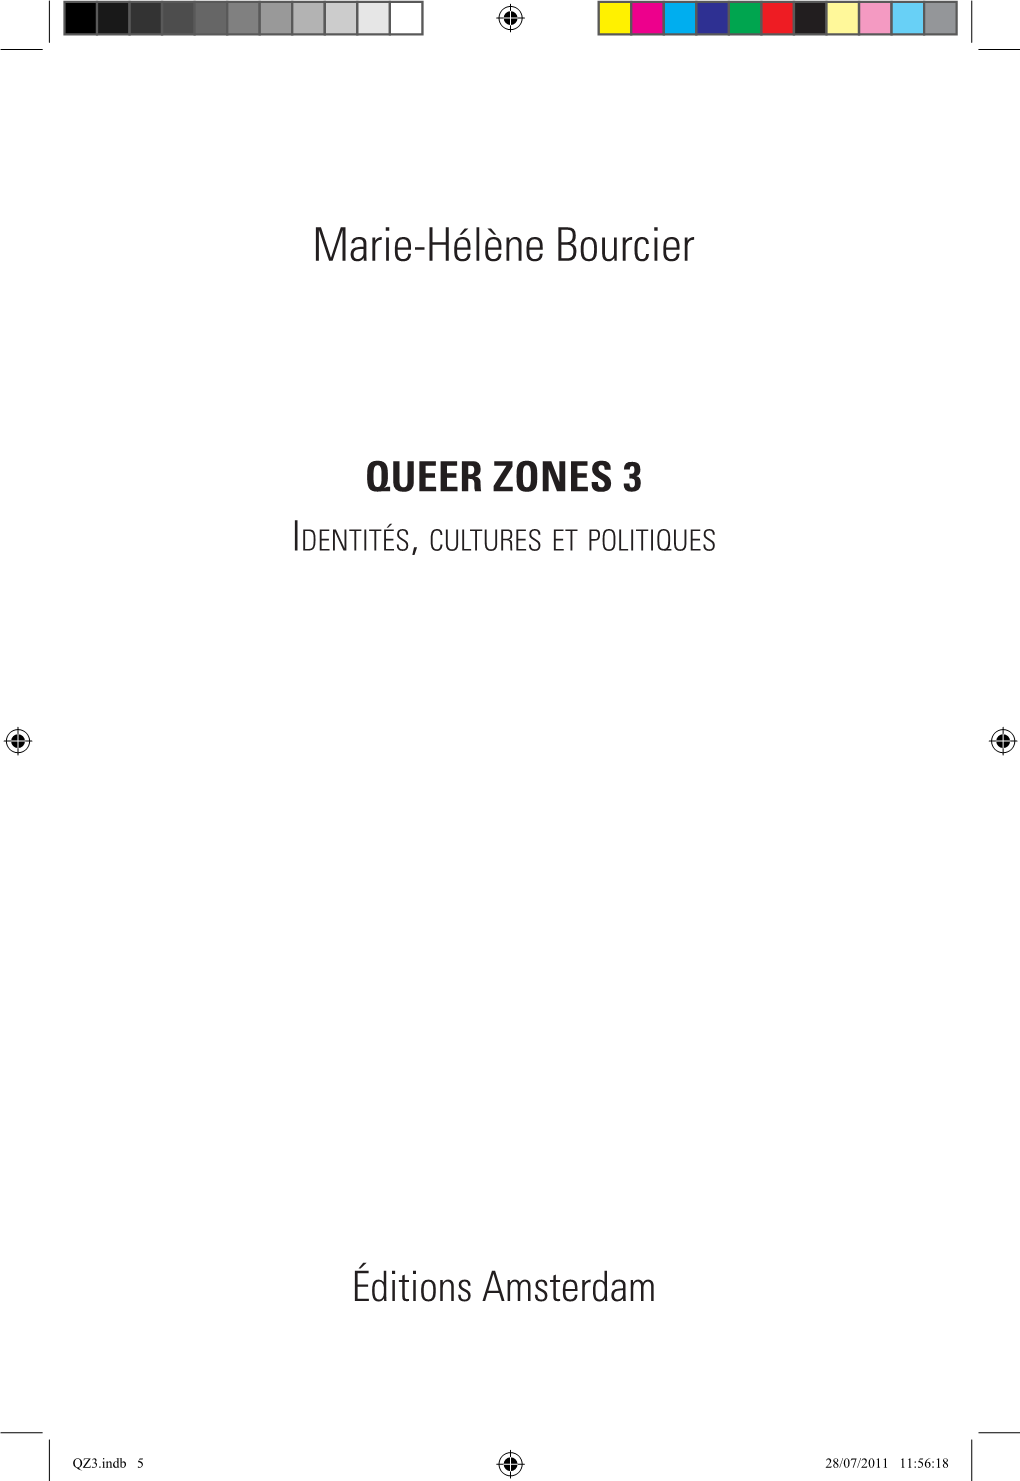 Marie-Hélène Bourcier